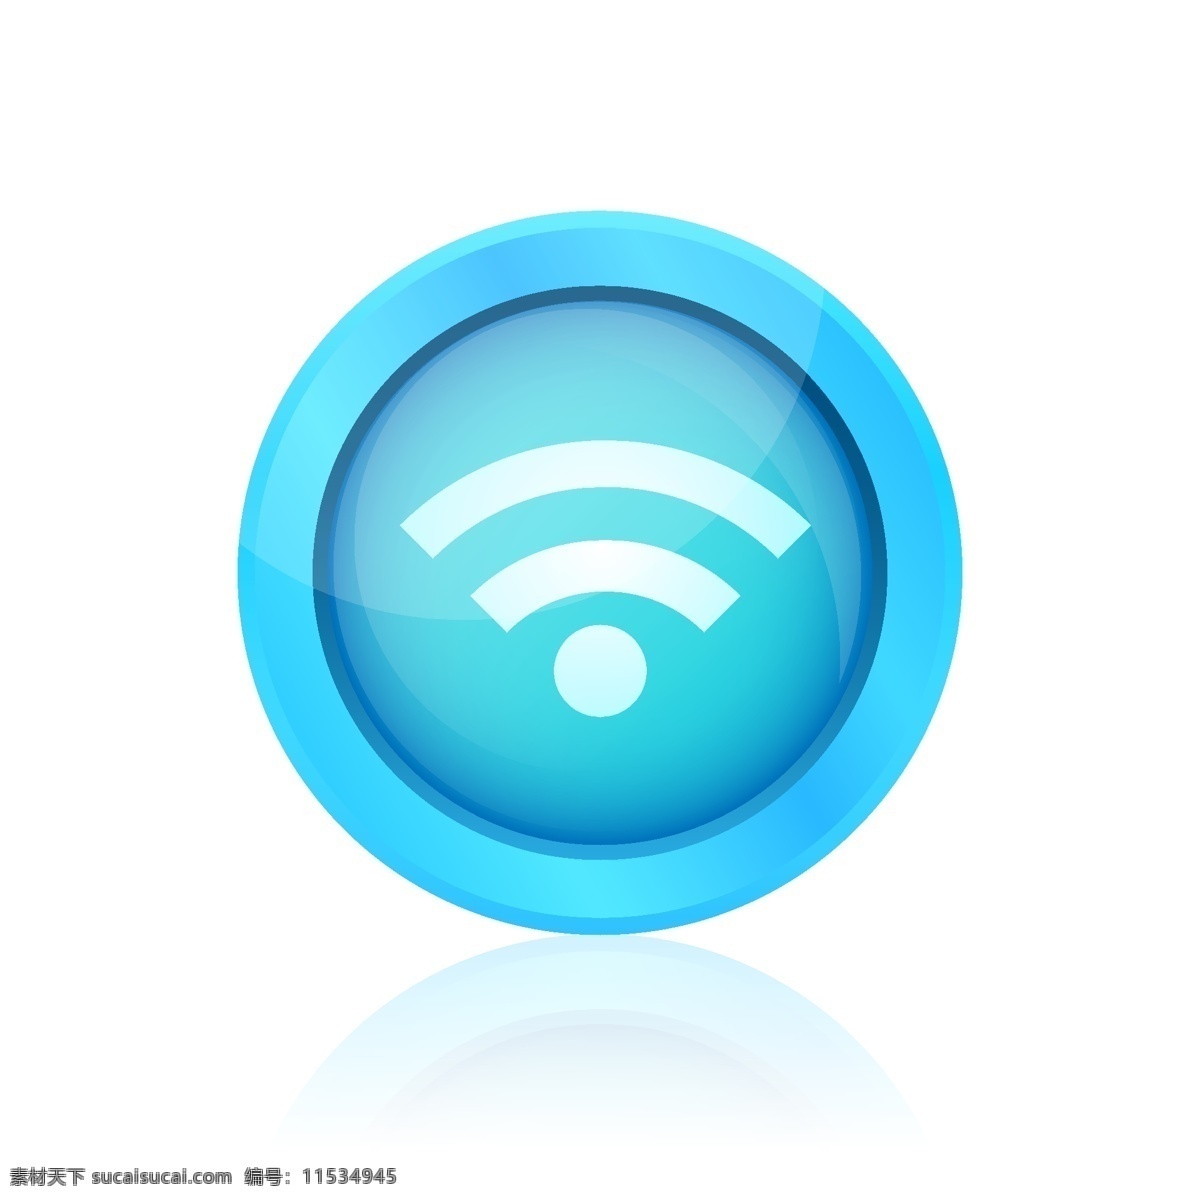 蓝色无线按钮 图标 圆形 按钮 网页 蓝色 wifi 网站 圆 网络 连接 元素 多媒体 网络元素 白色